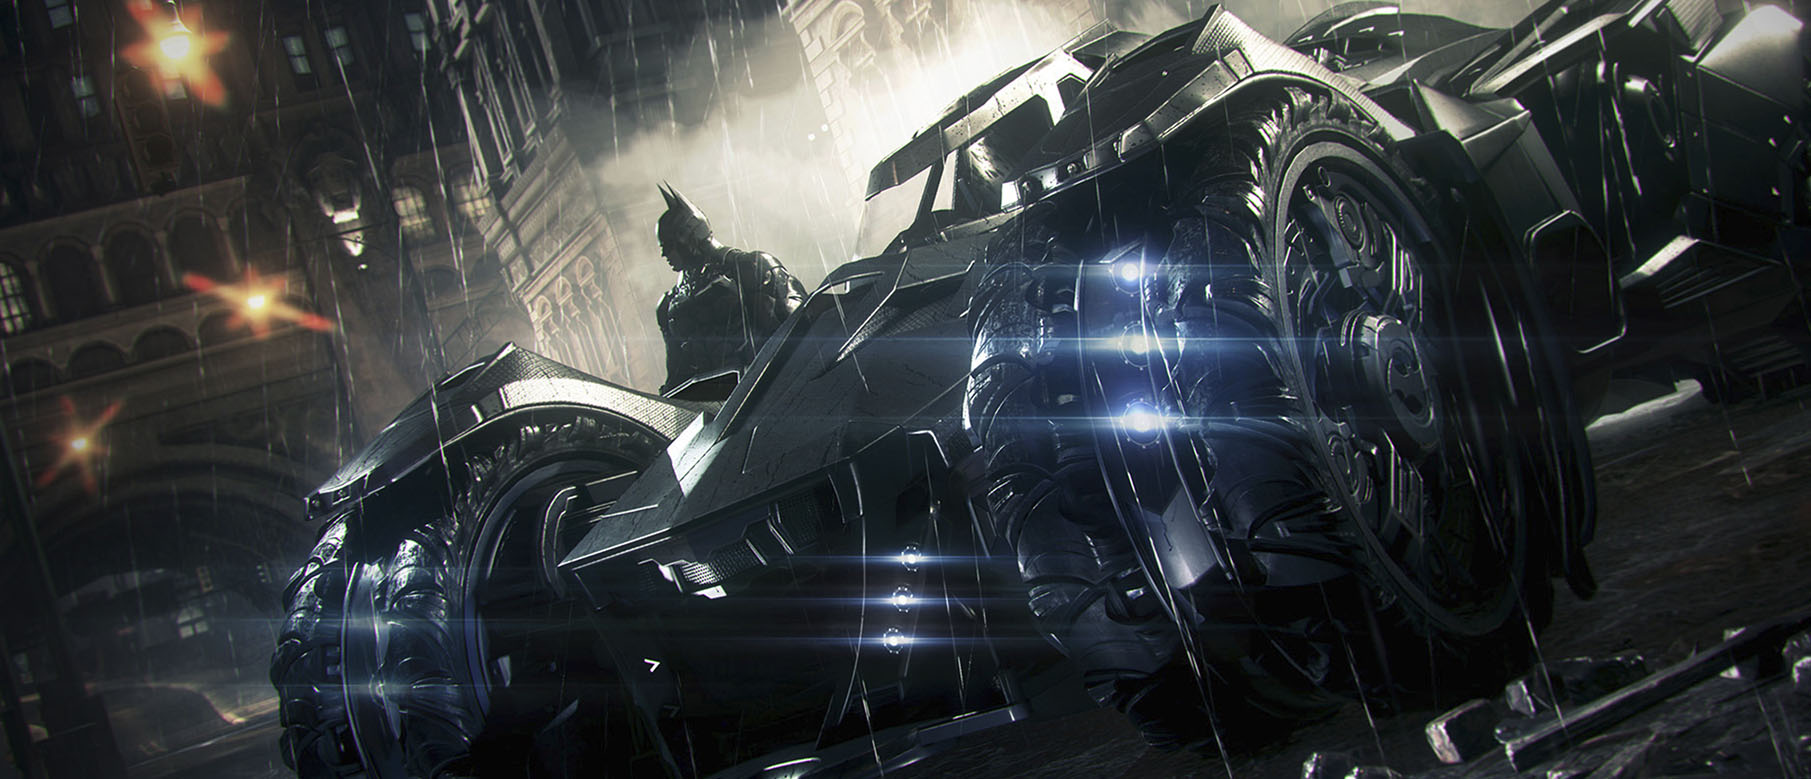 Изображение к Бэтмобиль из Batman: Arkham Knight прикатил в Лос-Сантос